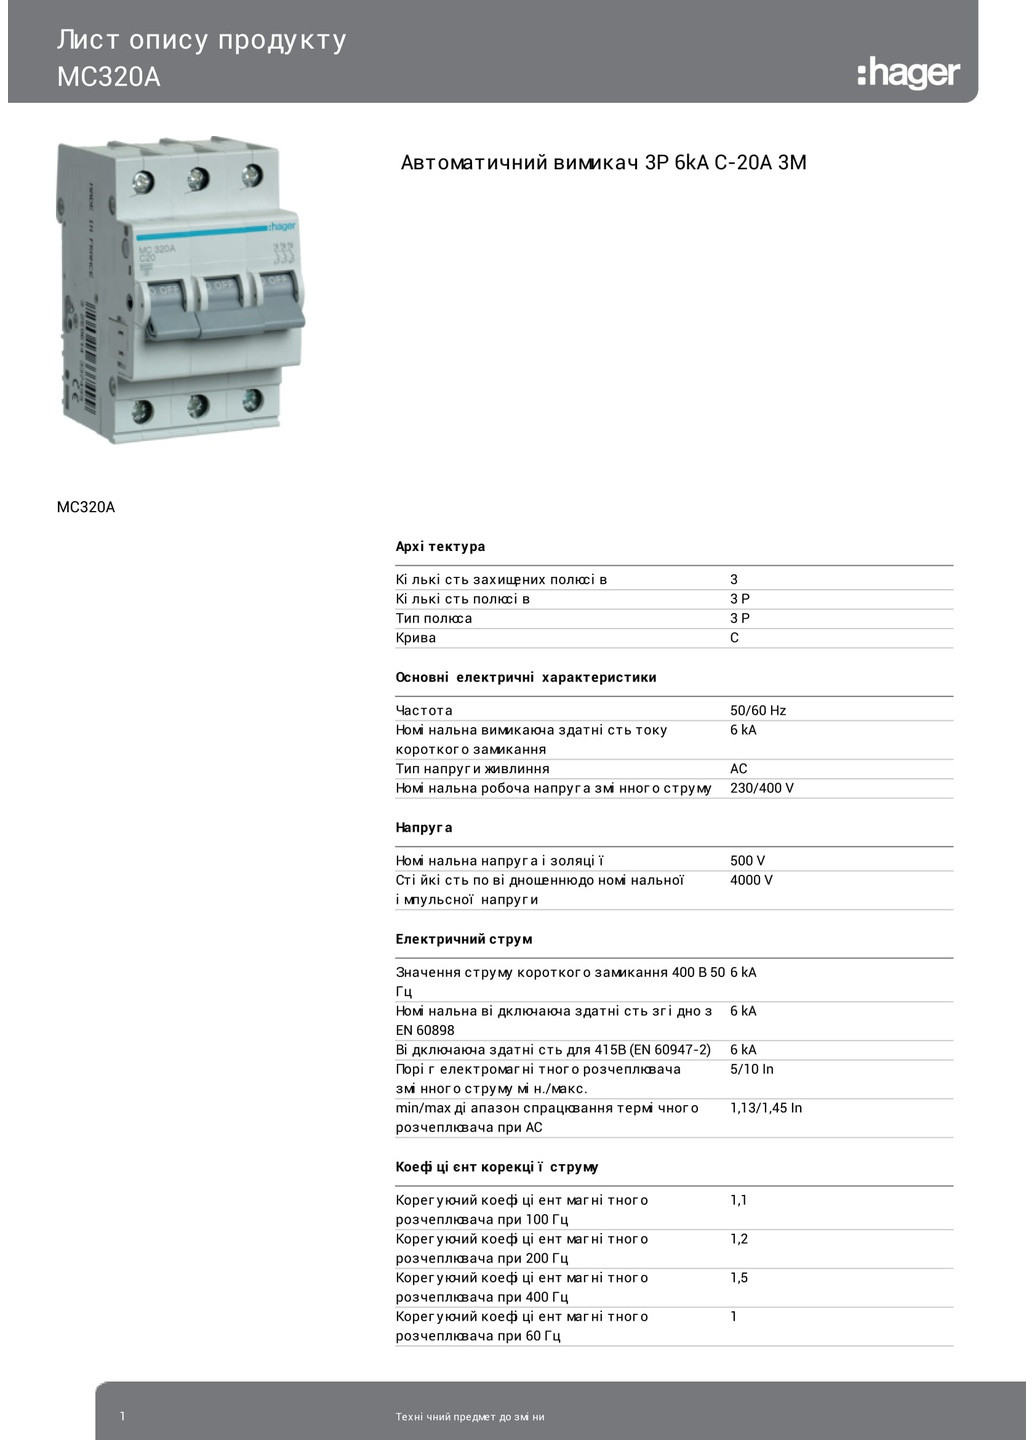 Вводный автомат трехполюсный 20А автоматический выключатель MCN320 3P 6kA C-20A 3M (3169) Hager (295042153)